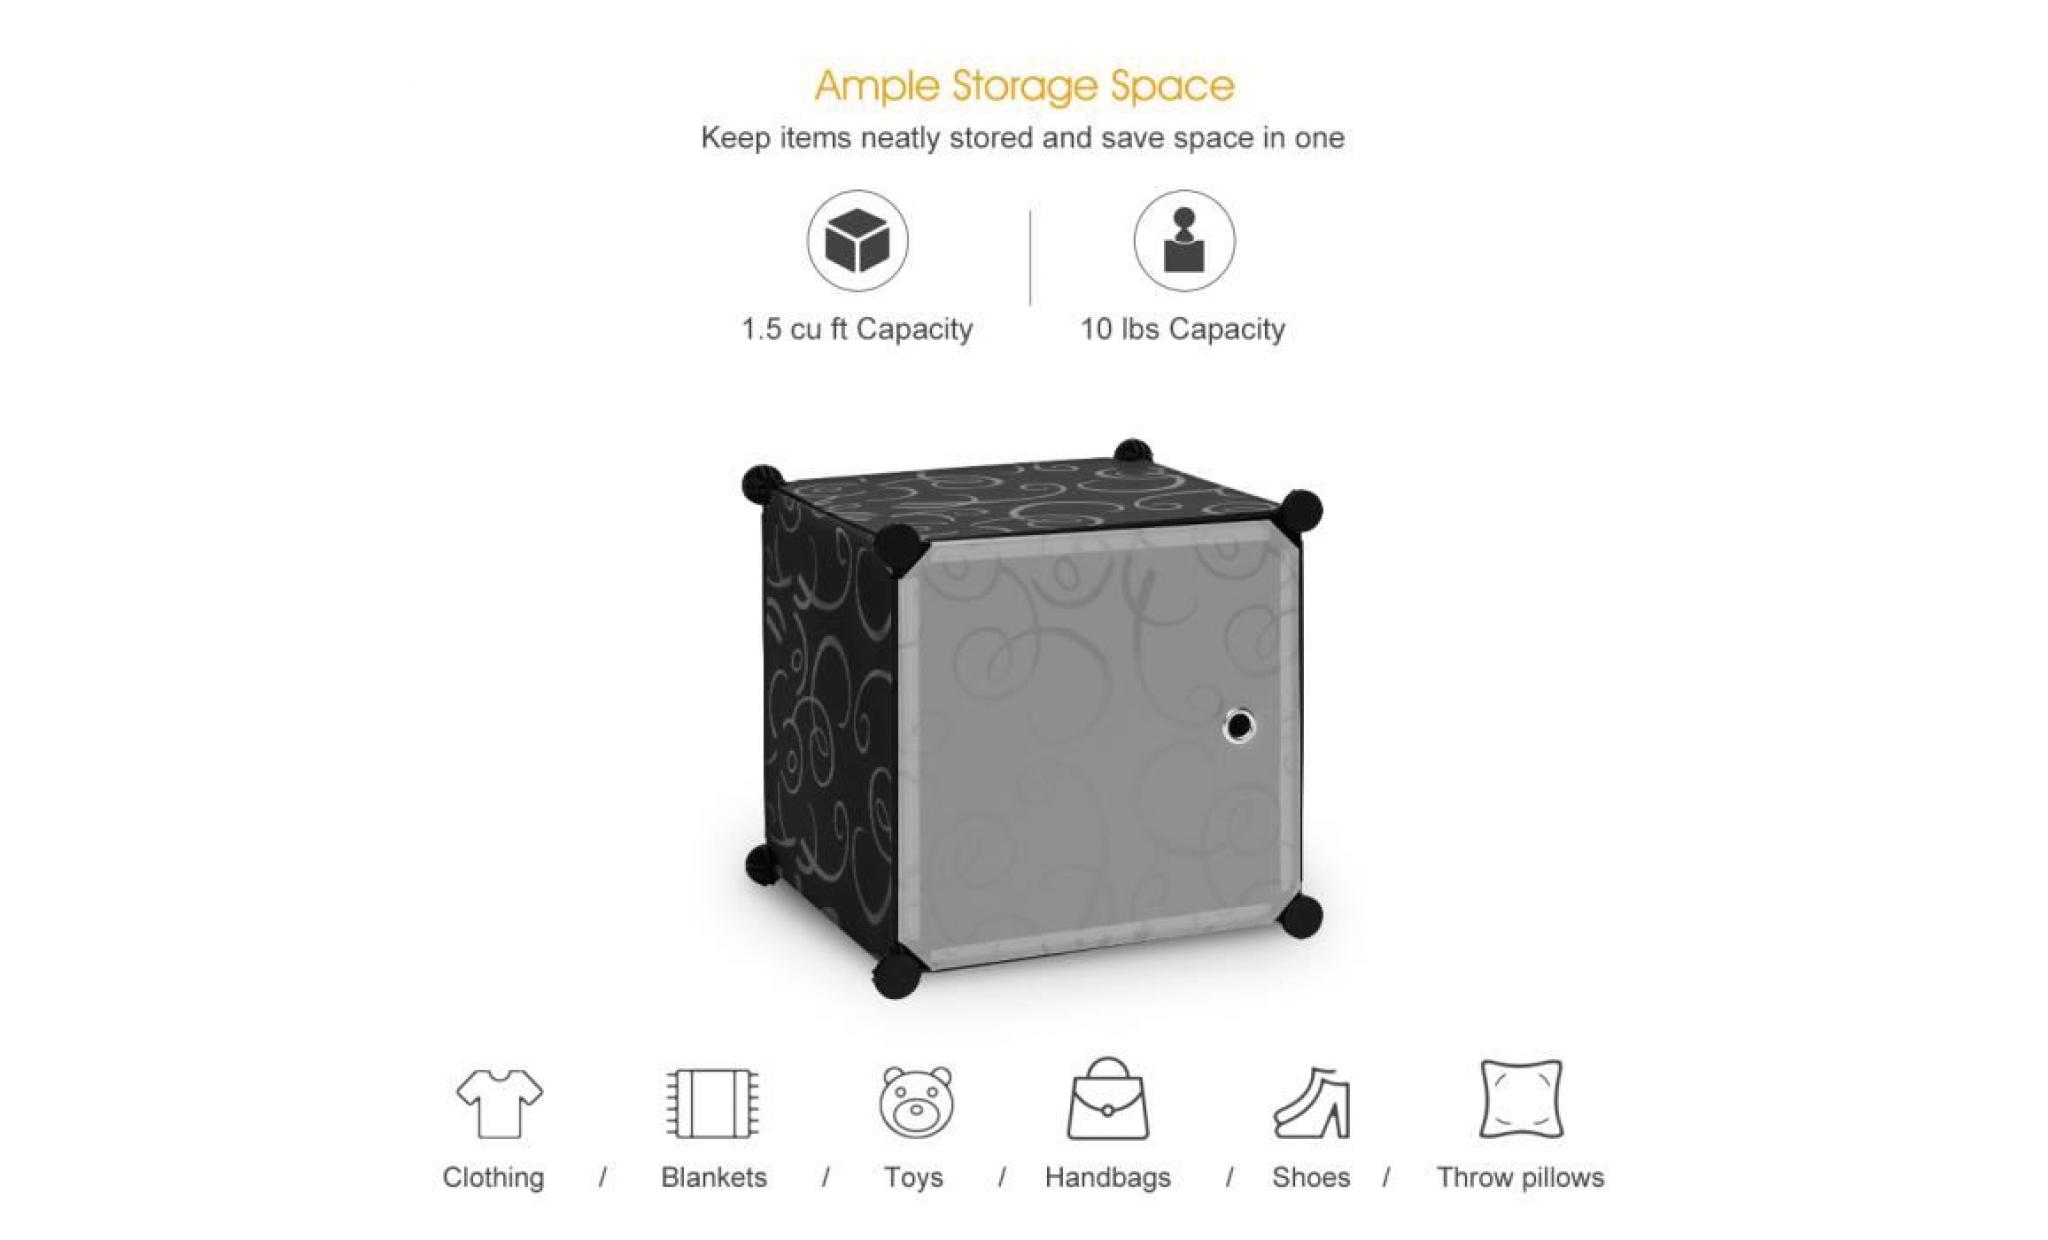 langria 12 cubes armoires Étagères plastique meuble rangement chambre pas cher